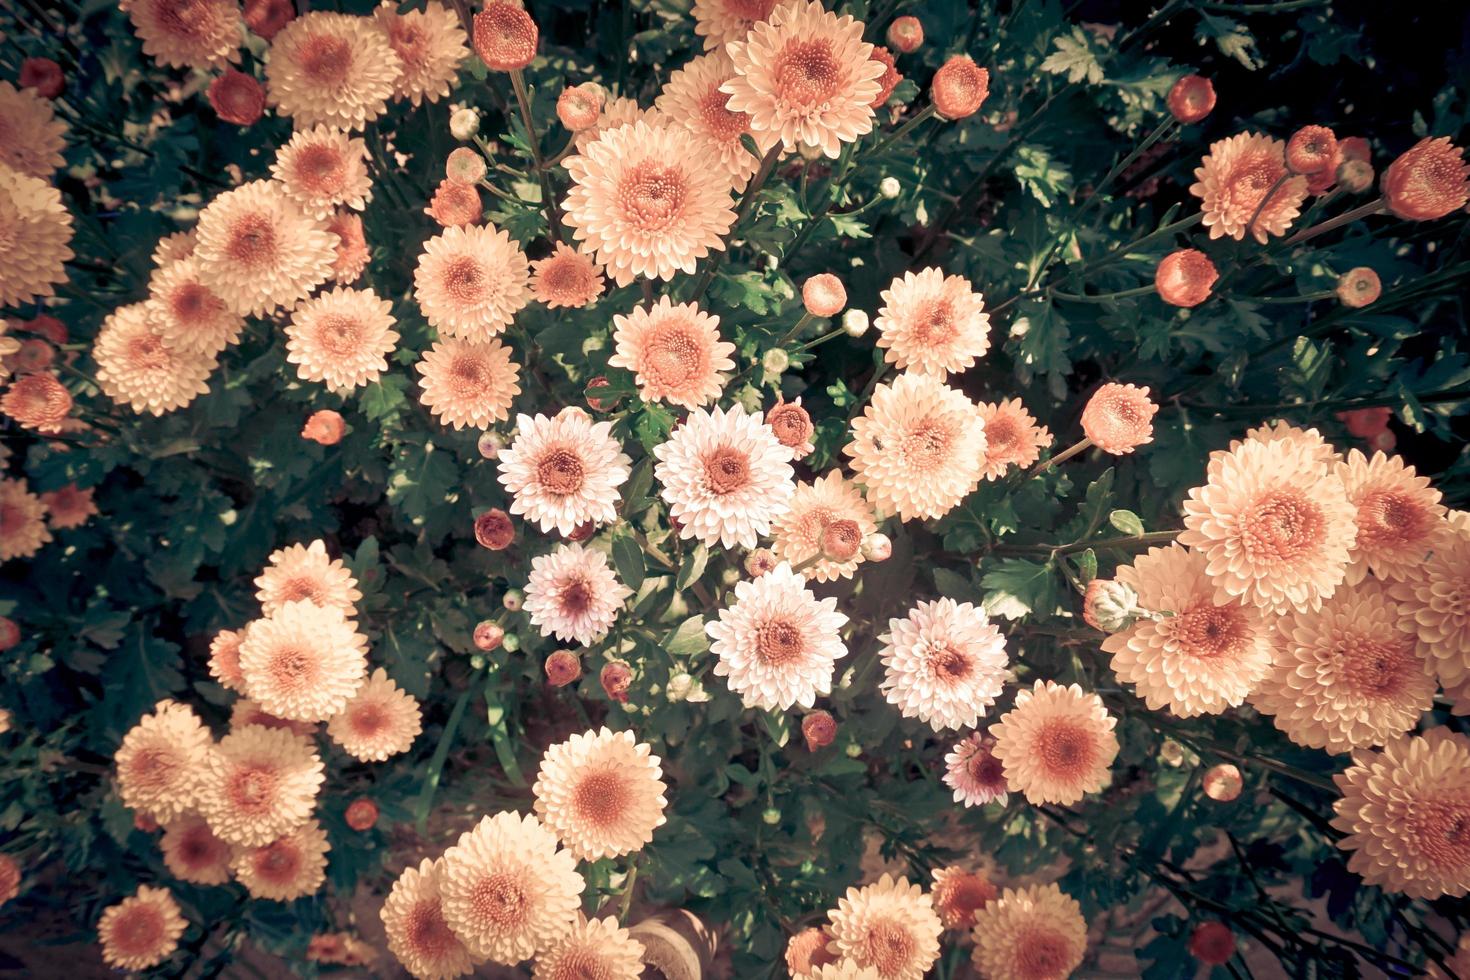 närbilder blommiga bakgrunder som framhäver de vackra detaljerna natur krysantemum blomma bakgrund blombilder som gör intryck foto